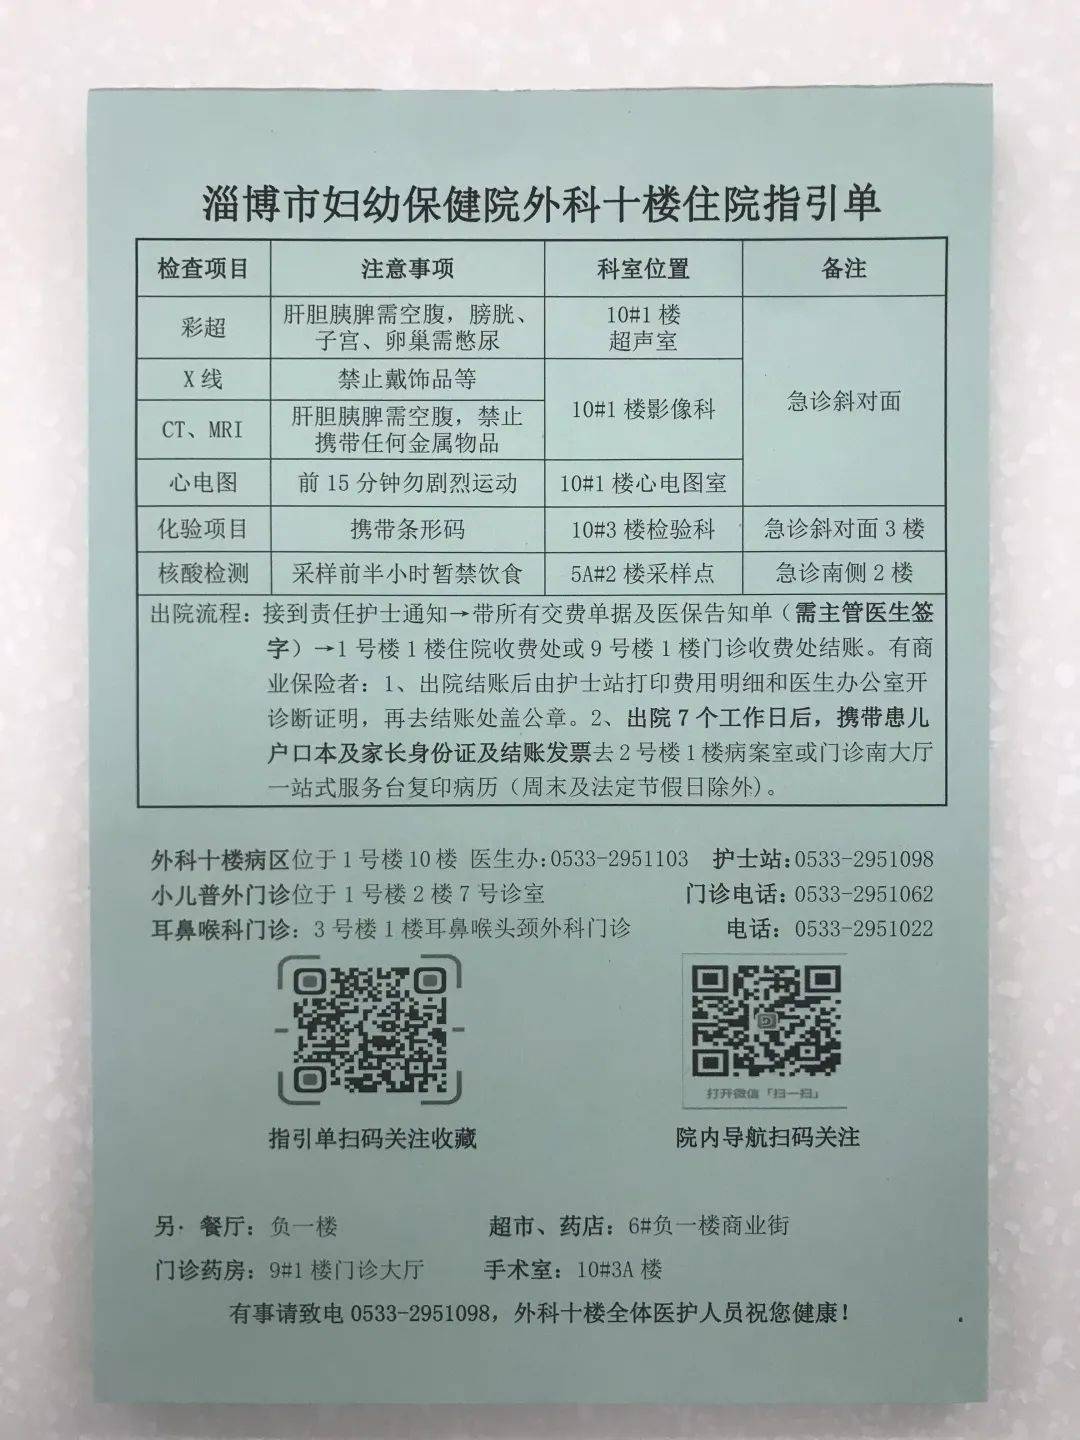 包含北京市海淀妇幼保健院支持医院取号全程跑腿!的词条